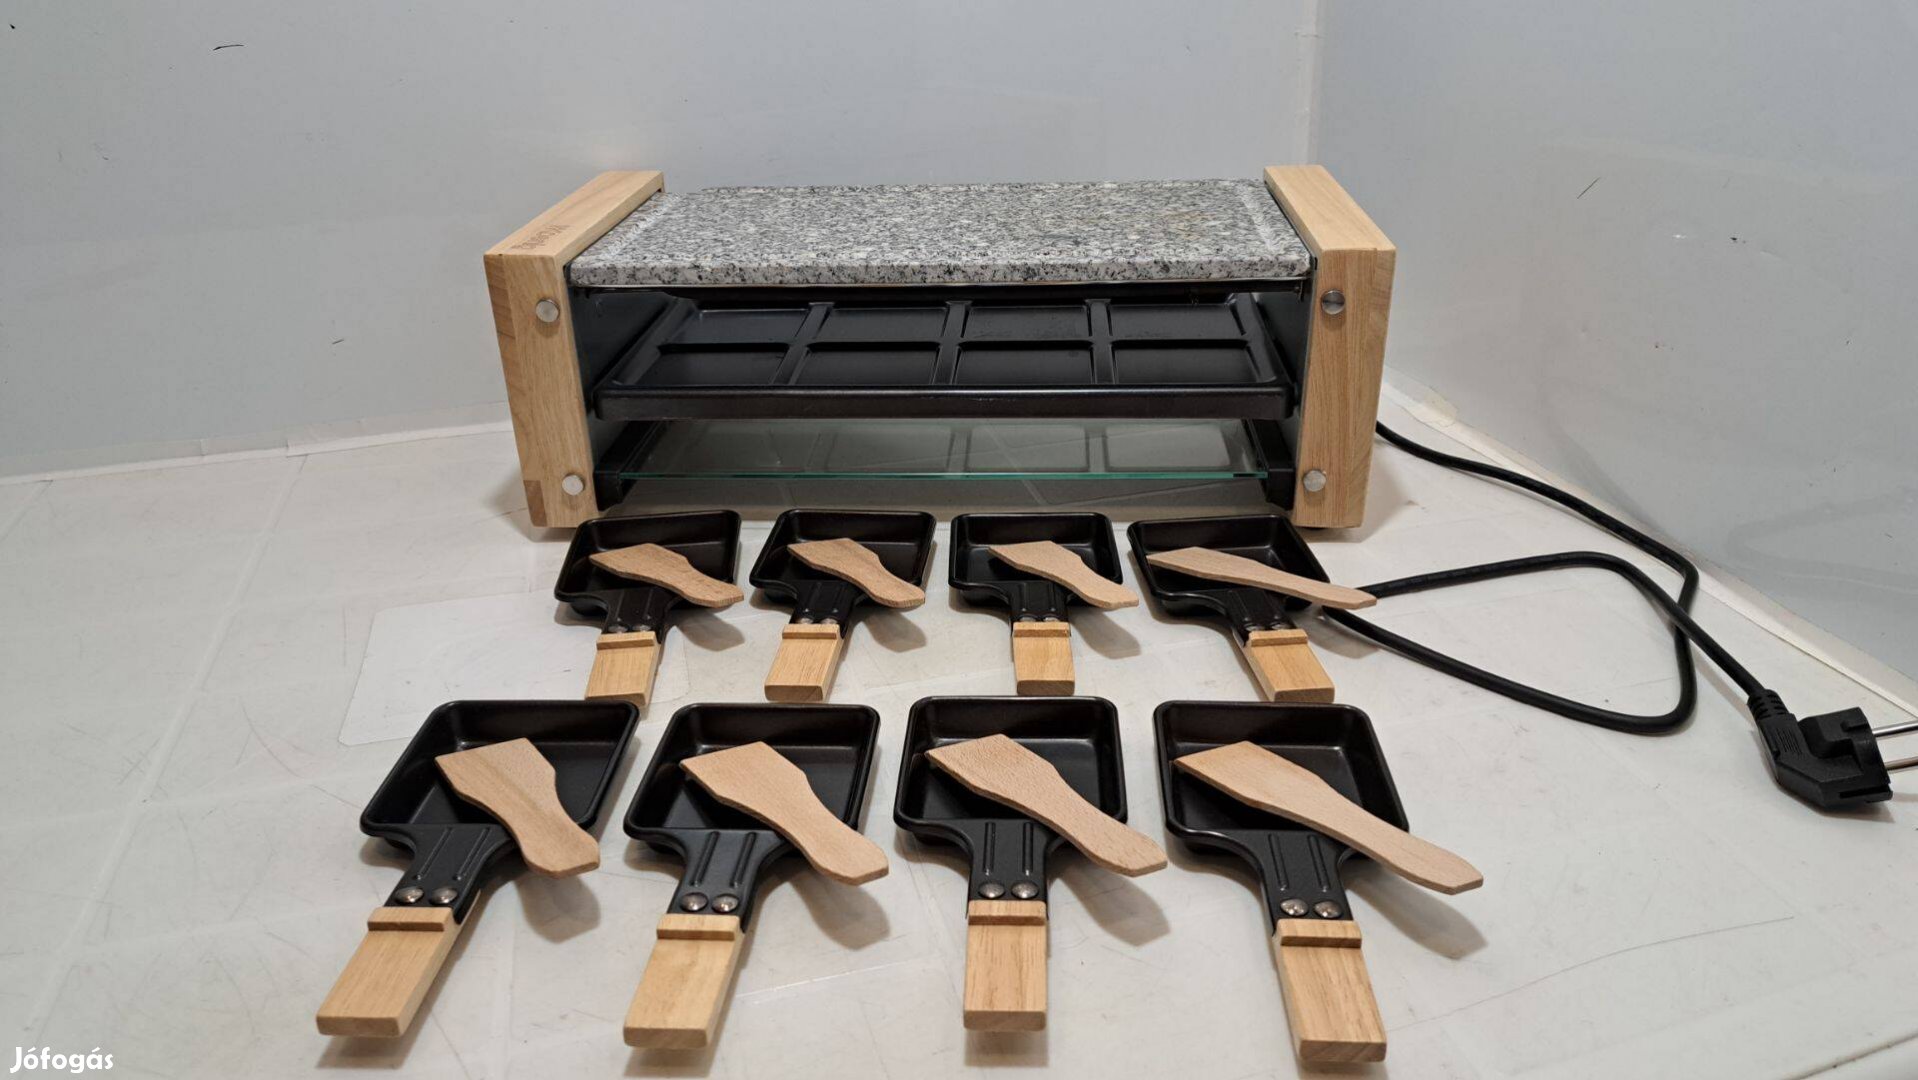 H.Koenig Elektromos grill + raclette sütő, Wod12, 38 x 19,5 cm, sérült